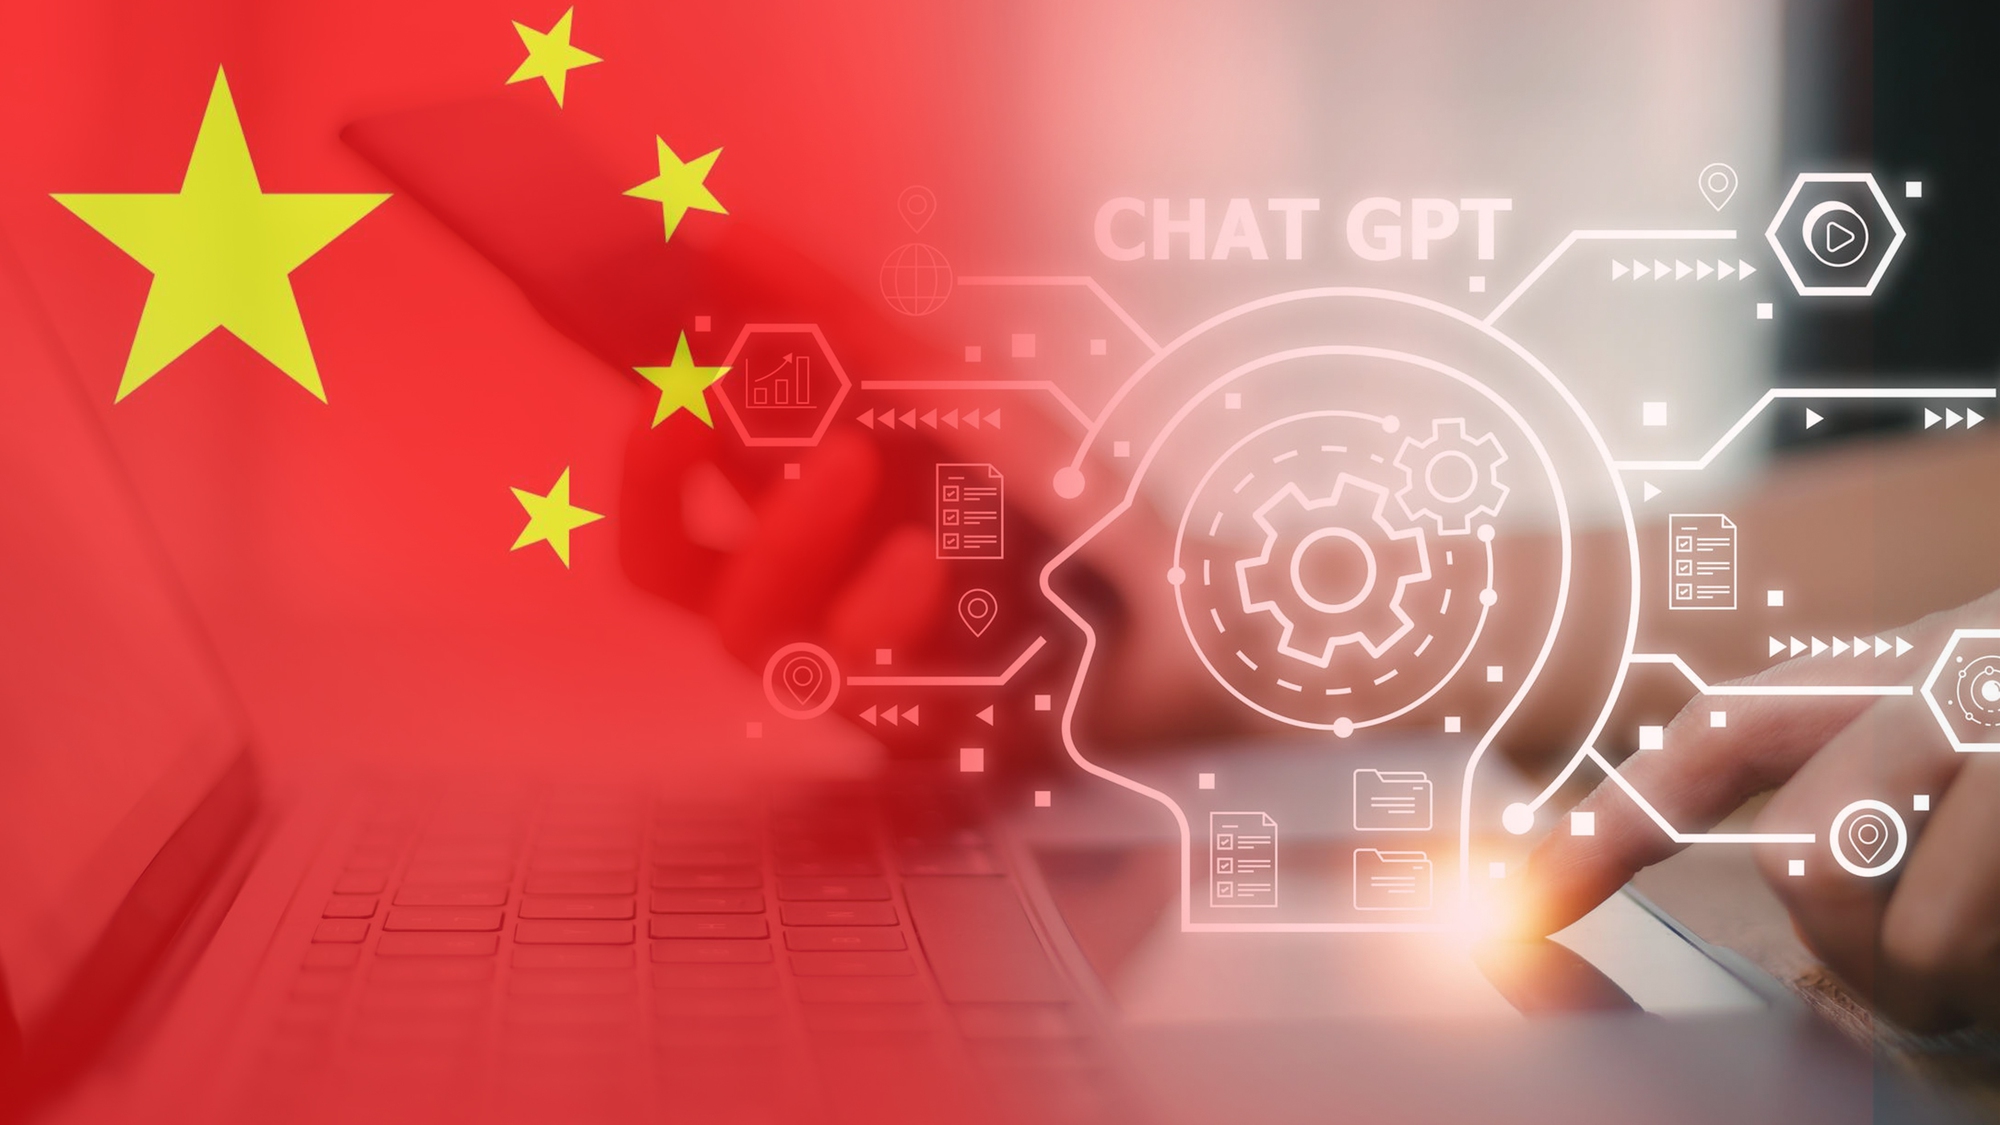 Tại sao Trung Quốc không phát minh ra ChatGPT? - Ảnh 1.